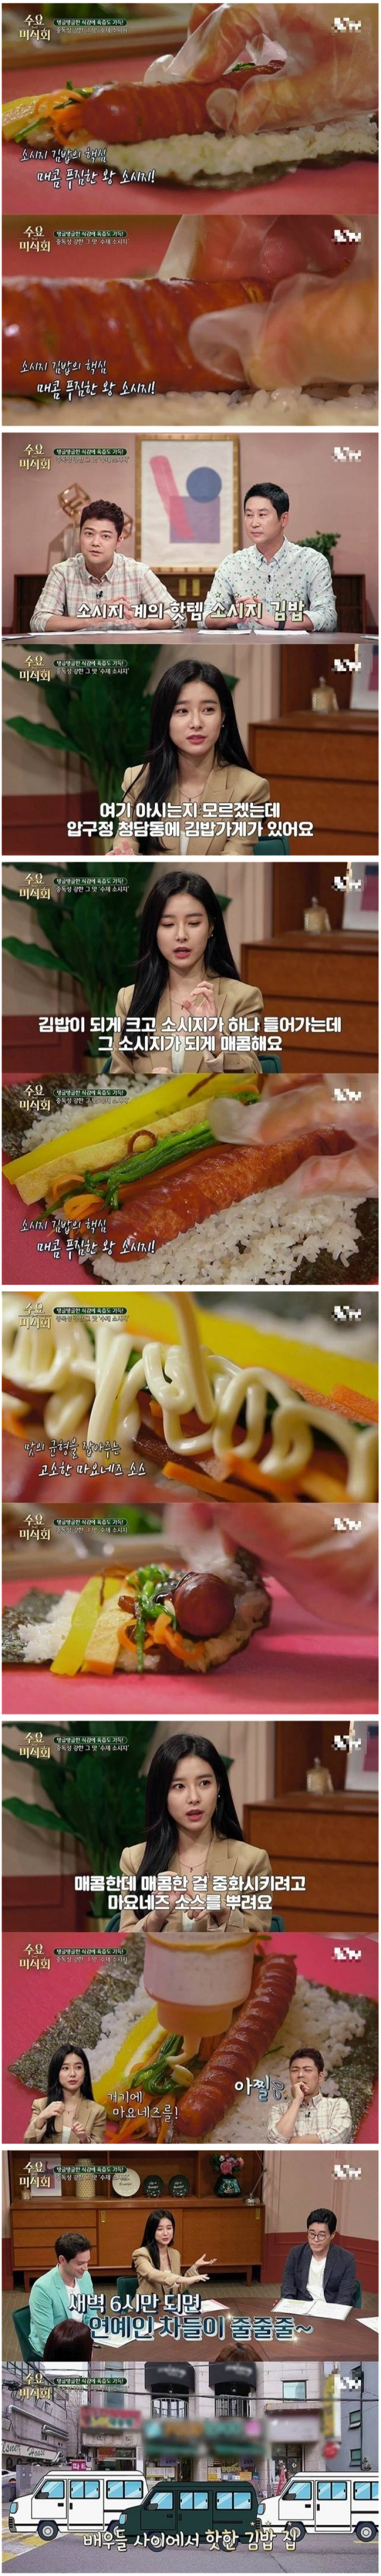 연예인들 사이에서 핫하다는 김밥